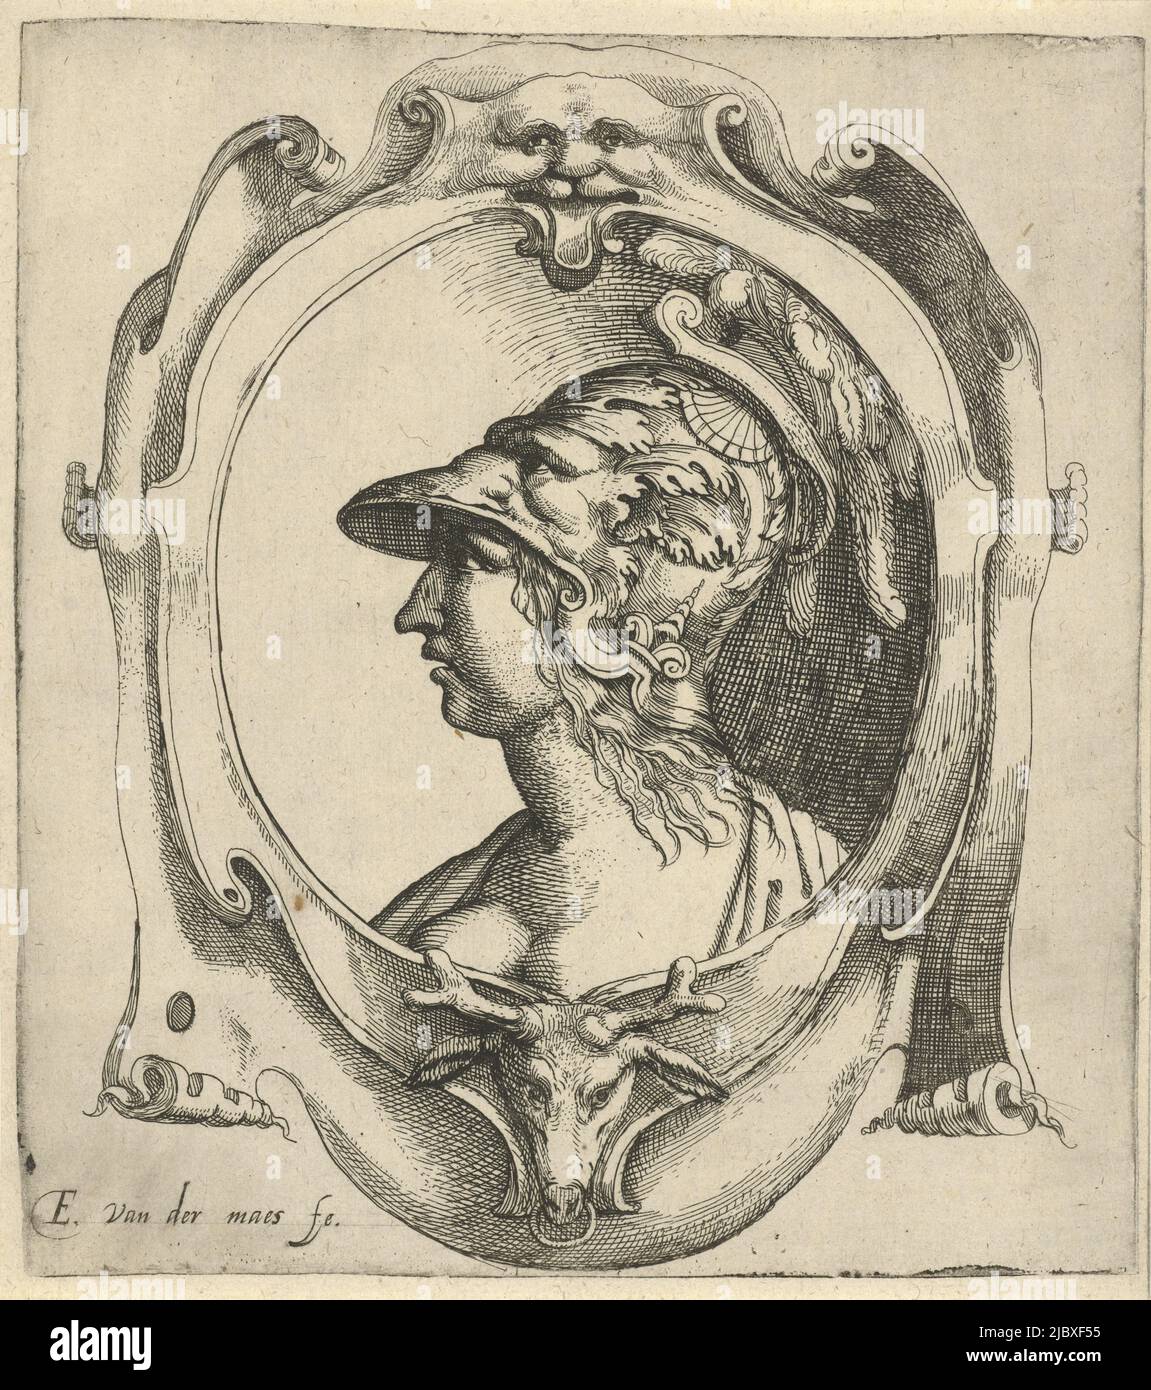 Buste d'une jeune femme à gauche avec un casque richement décoré sur la tête, dans une cartouche, dans laquelle de dessous une tête de cerf et au-dessus d'un visage., buste de jeune femme avec un casque, imprimeur: Everard Crynsz. Van der Maes, (mentionné sur l'objet), la Haye, 1587 - 1647, papier, gravure, gravure, h 192 mm × l 171 mm Banque D'Images